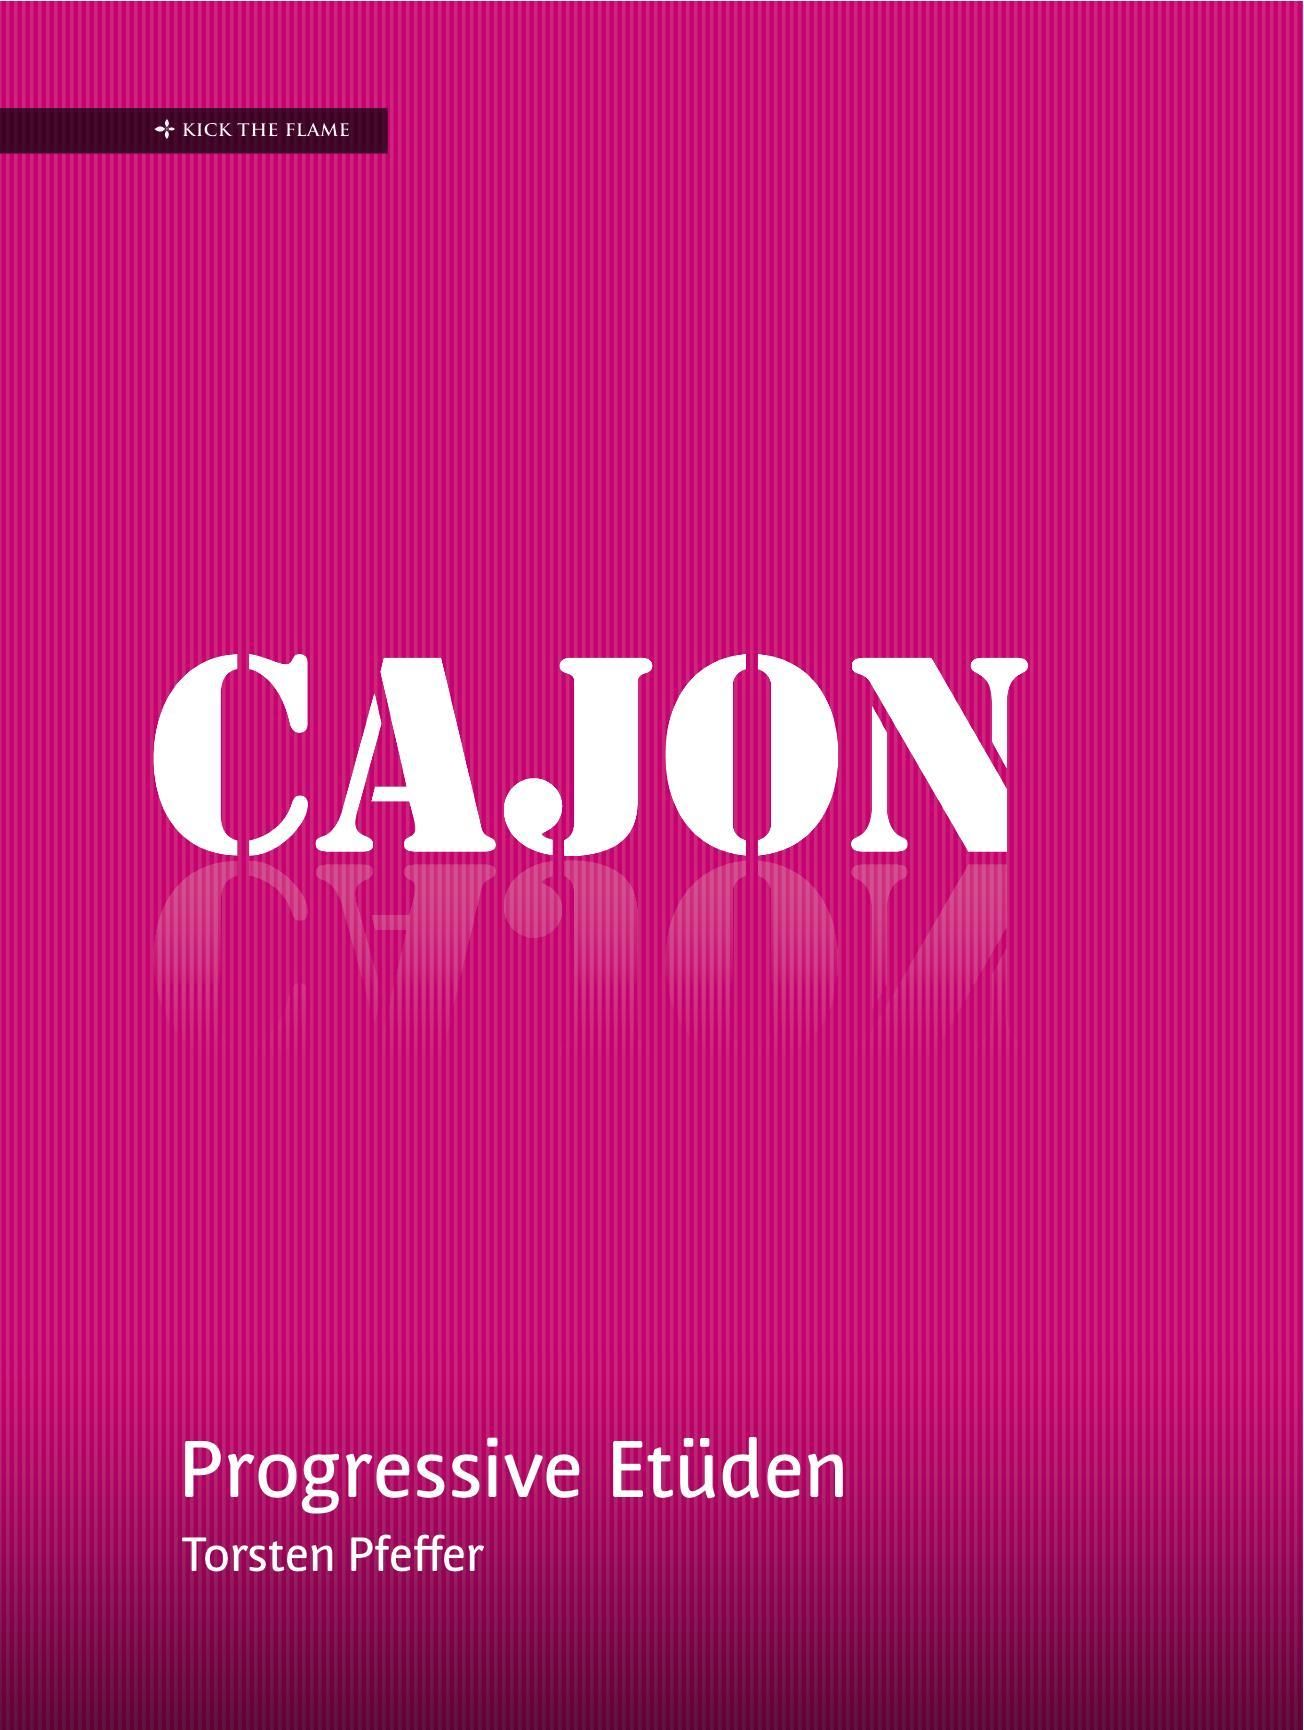 Cajon - Progressive Etueden